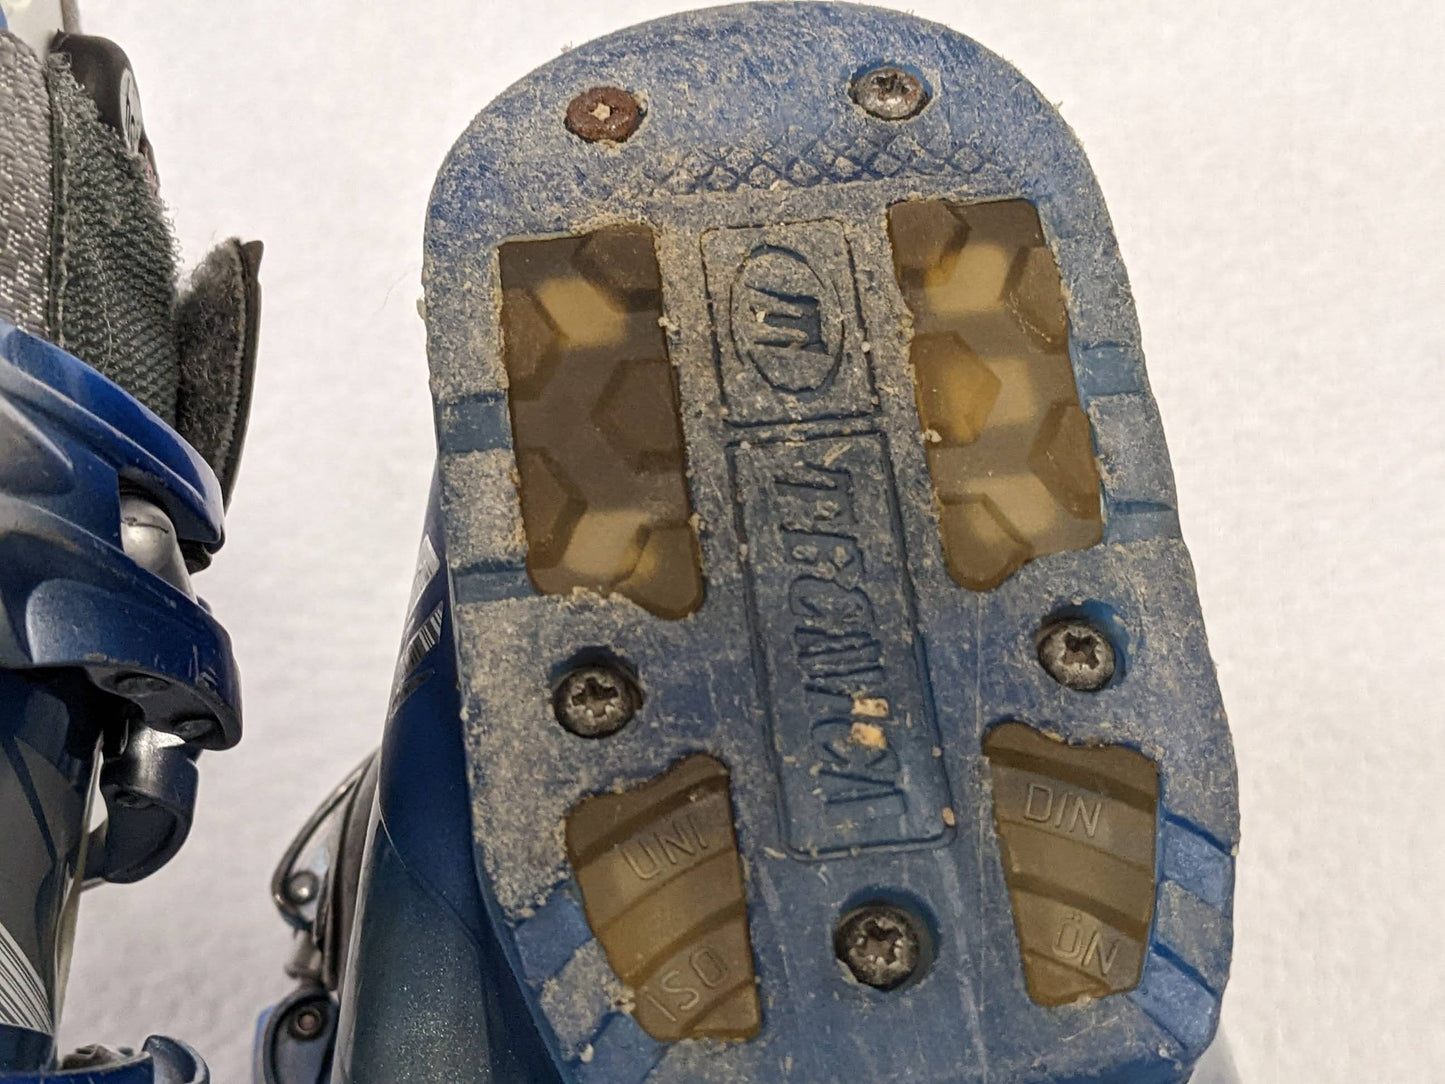 Tecnica Attiva Diablo Flame Women's Ski Boots Size Mondo 23.5 Color Blue Condition Used